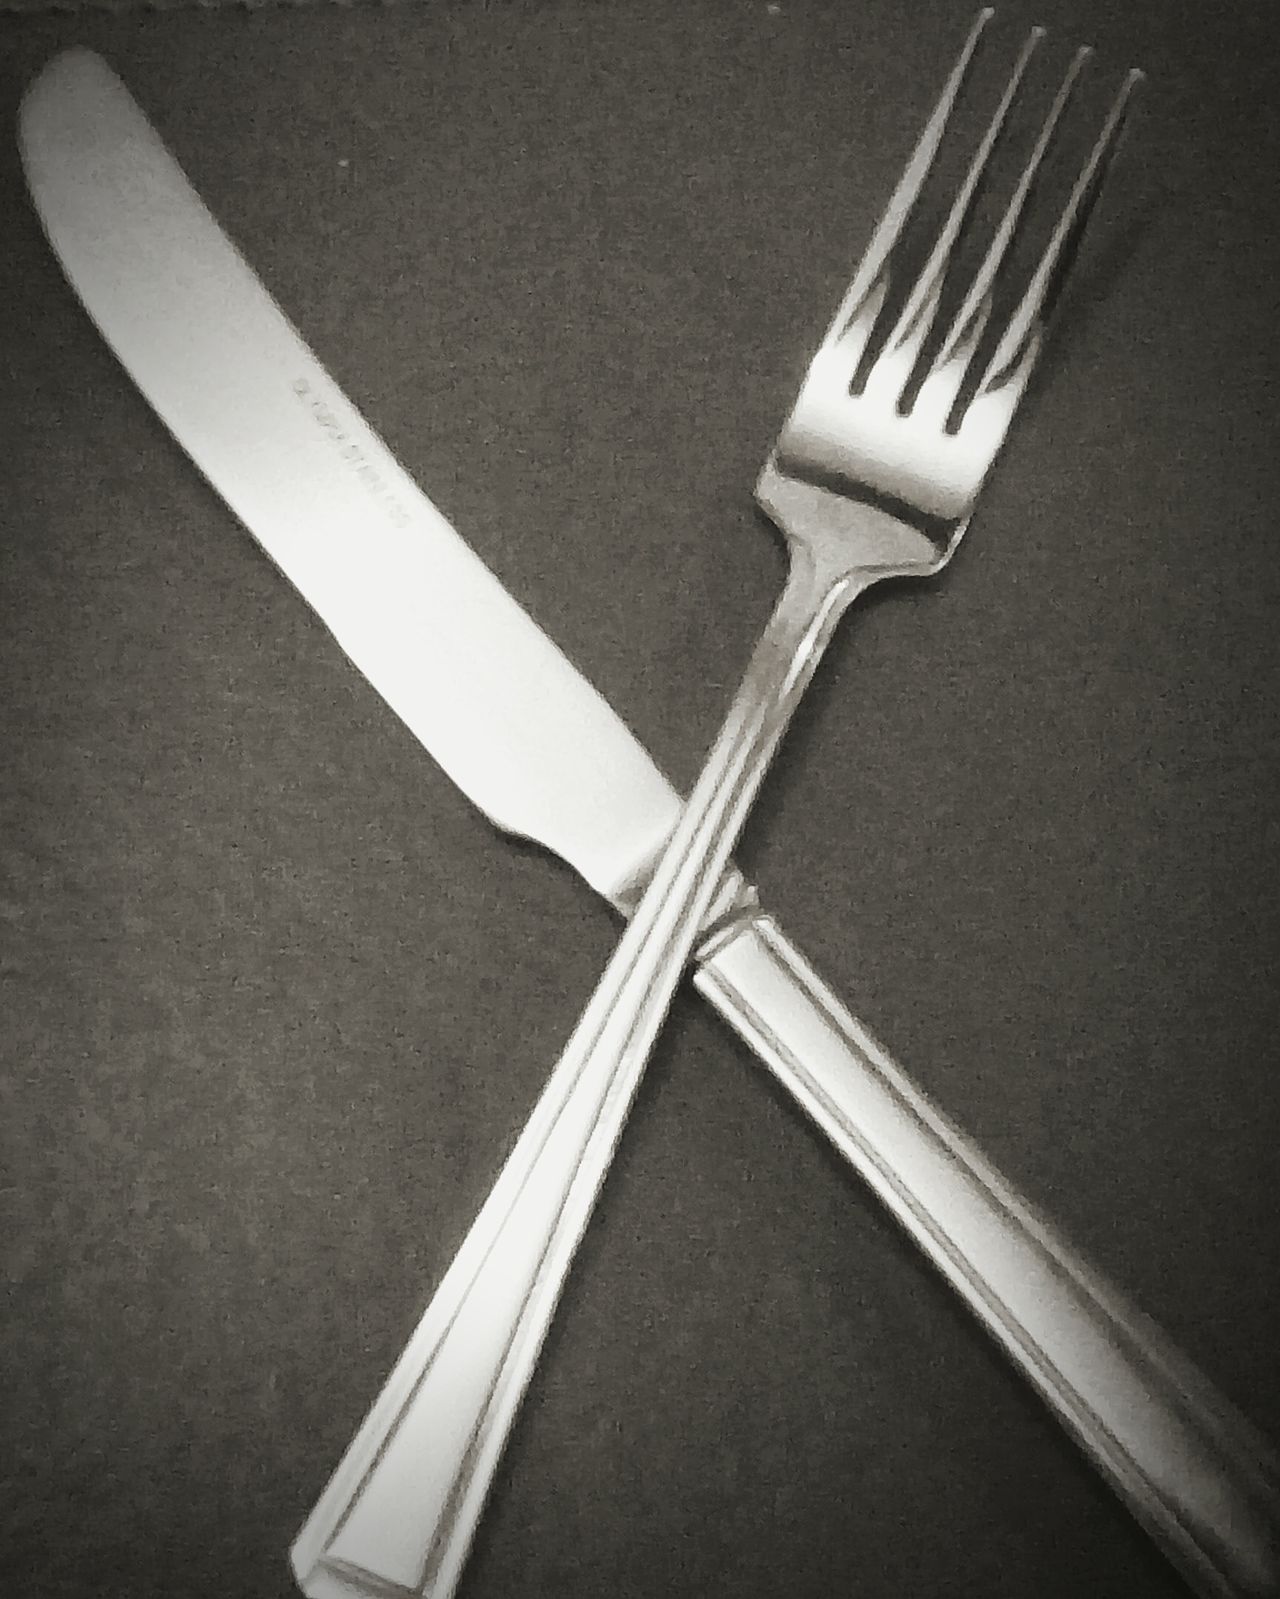 Knife & fork